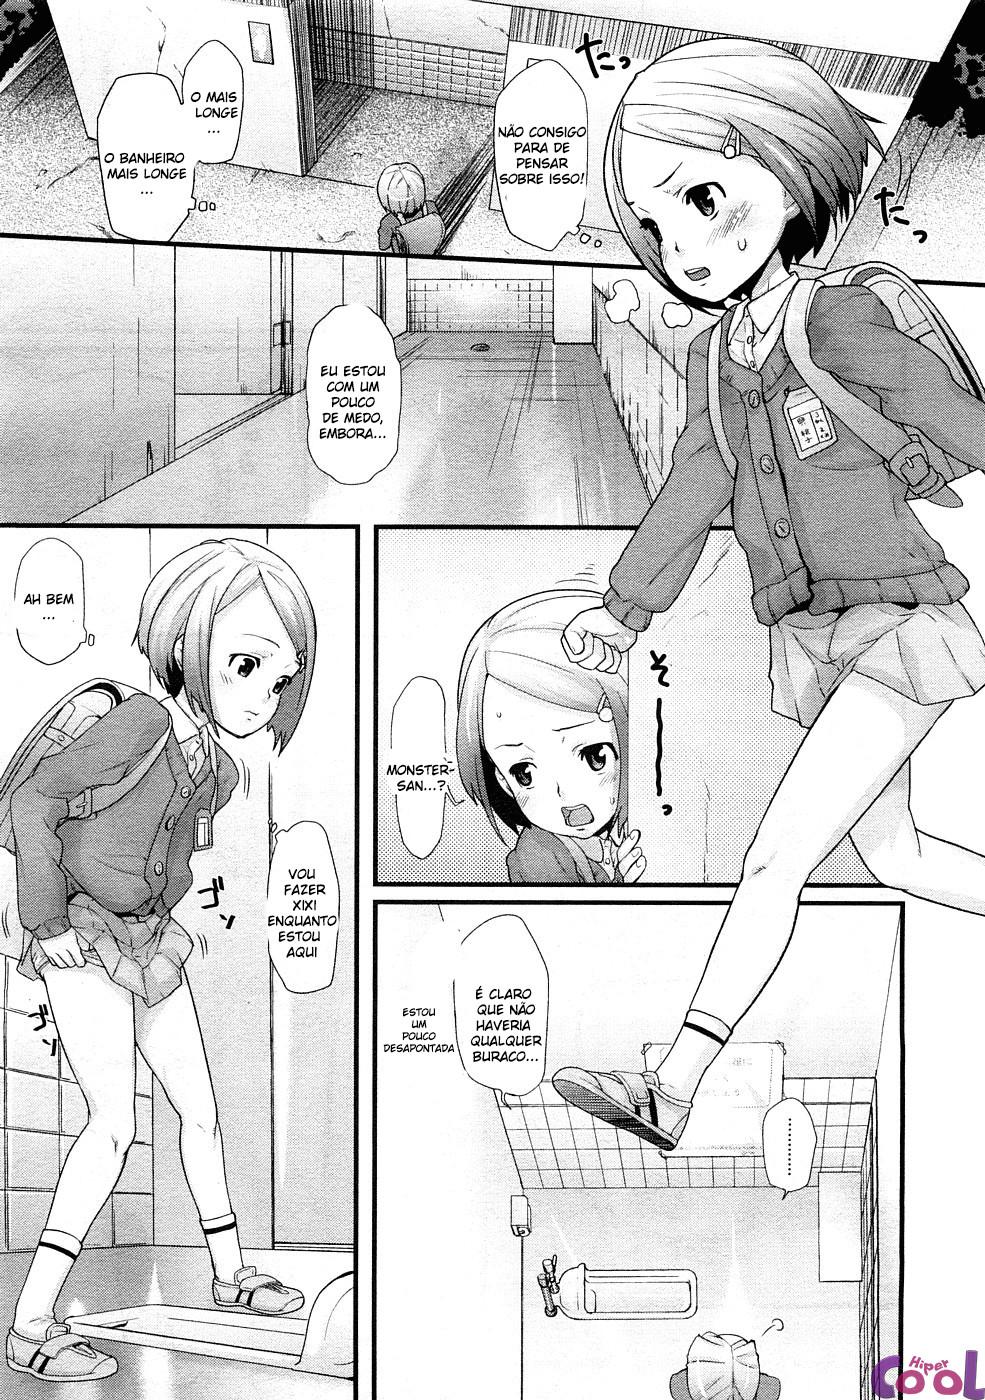 ana-no-toriko-chapter-01-page-03.jpg